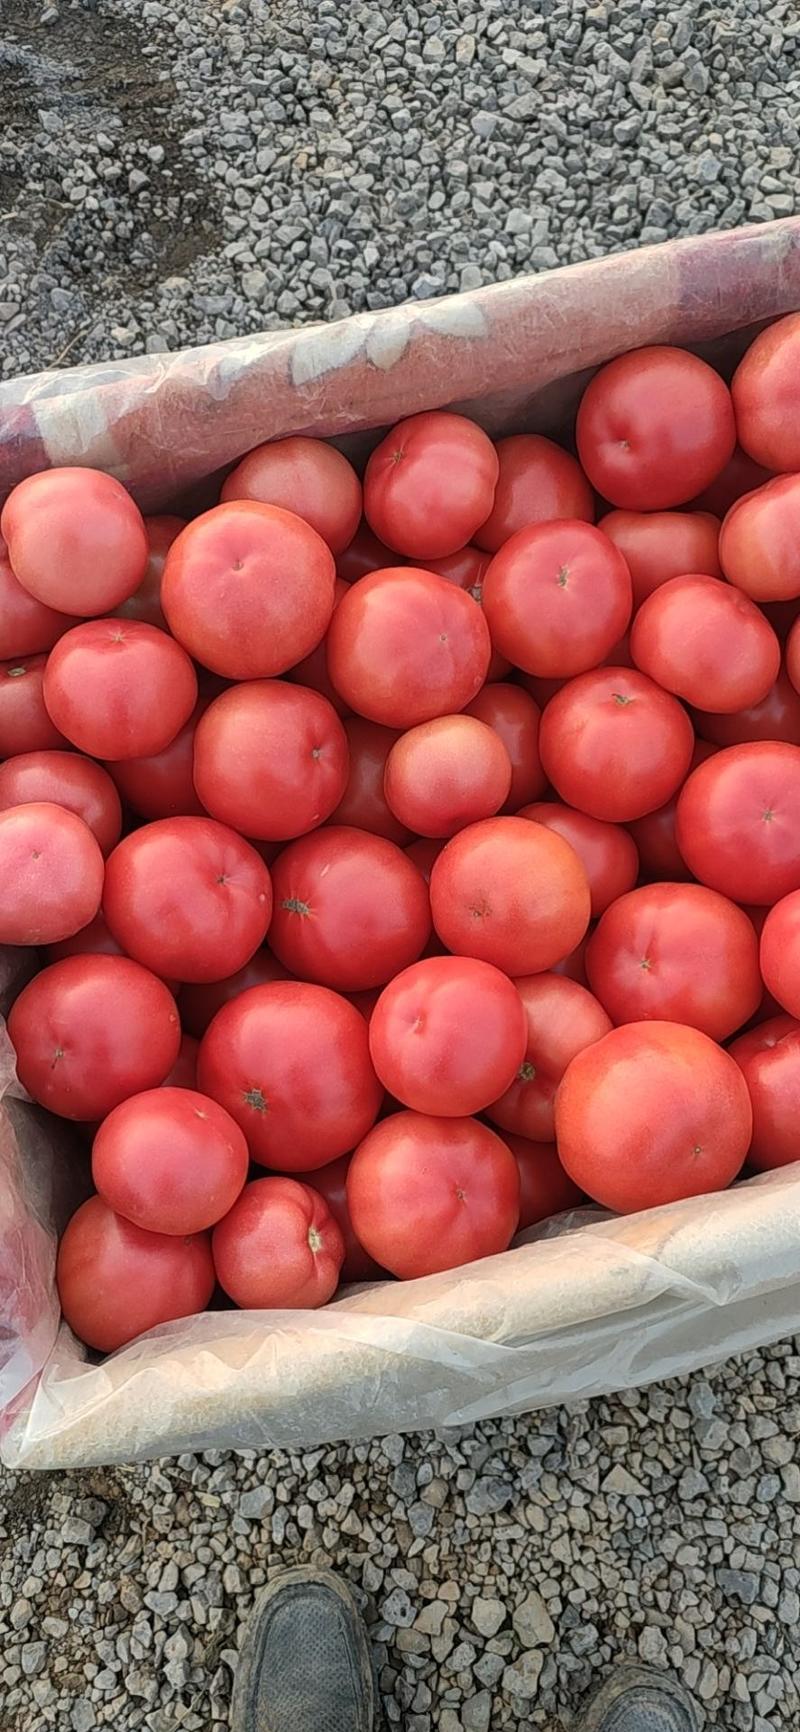 硬粉西红柿